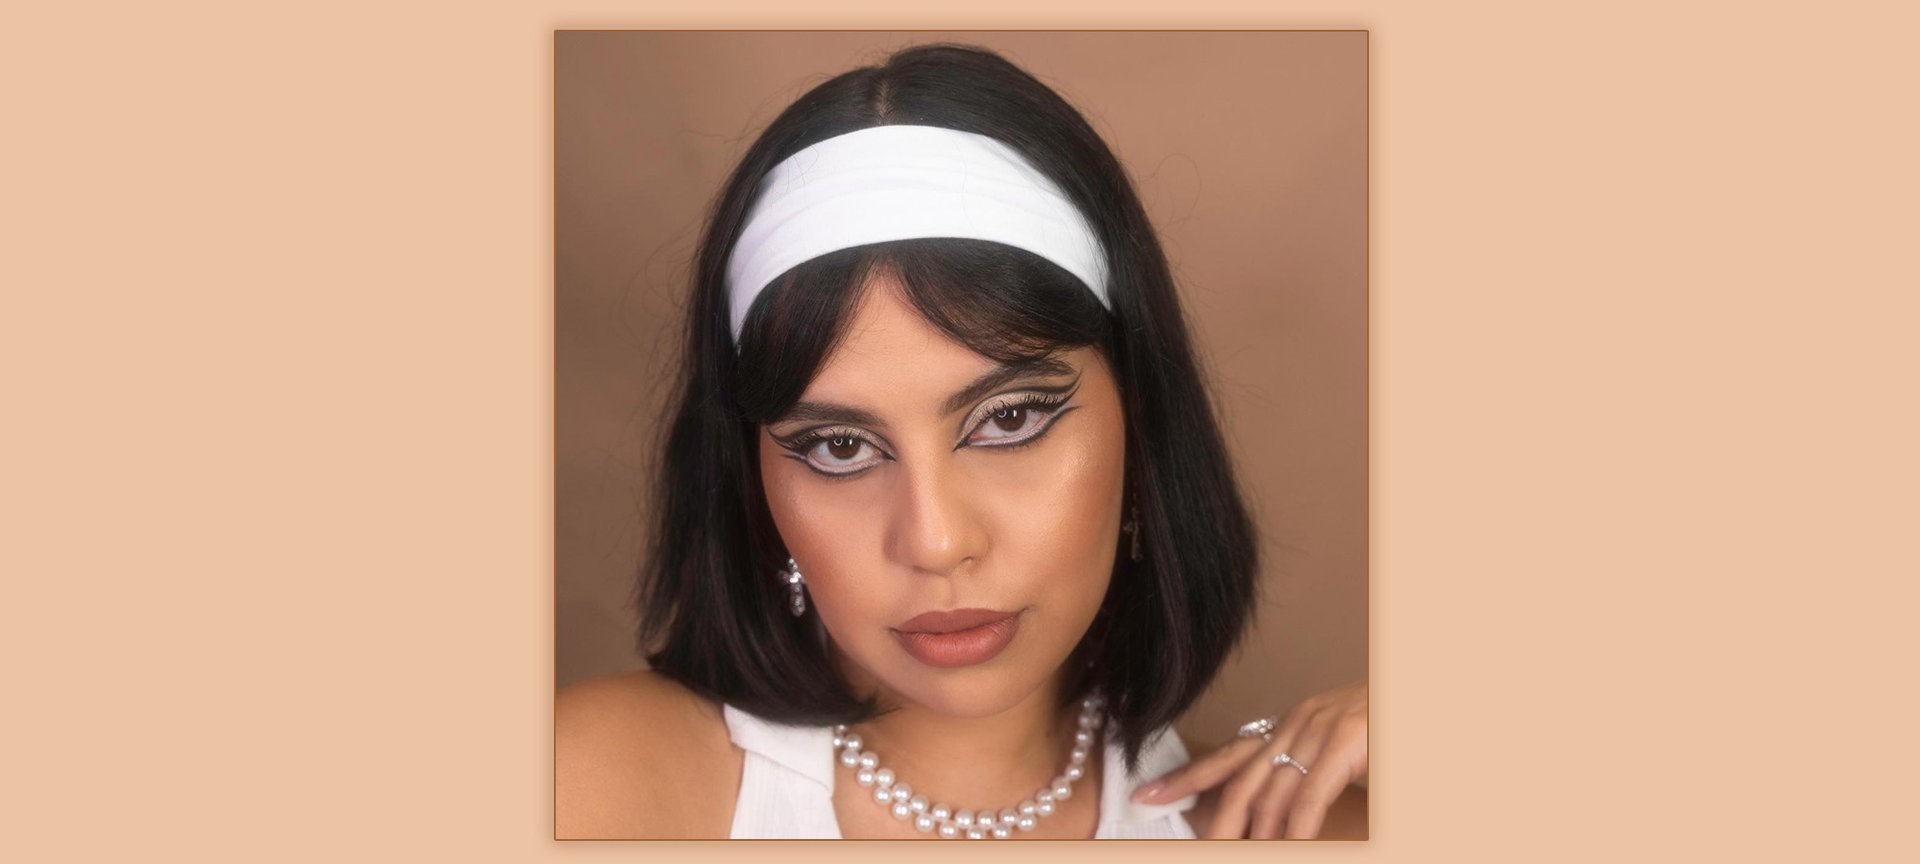 Best '70s Makeup Trends to Try - L'Oréal Paris